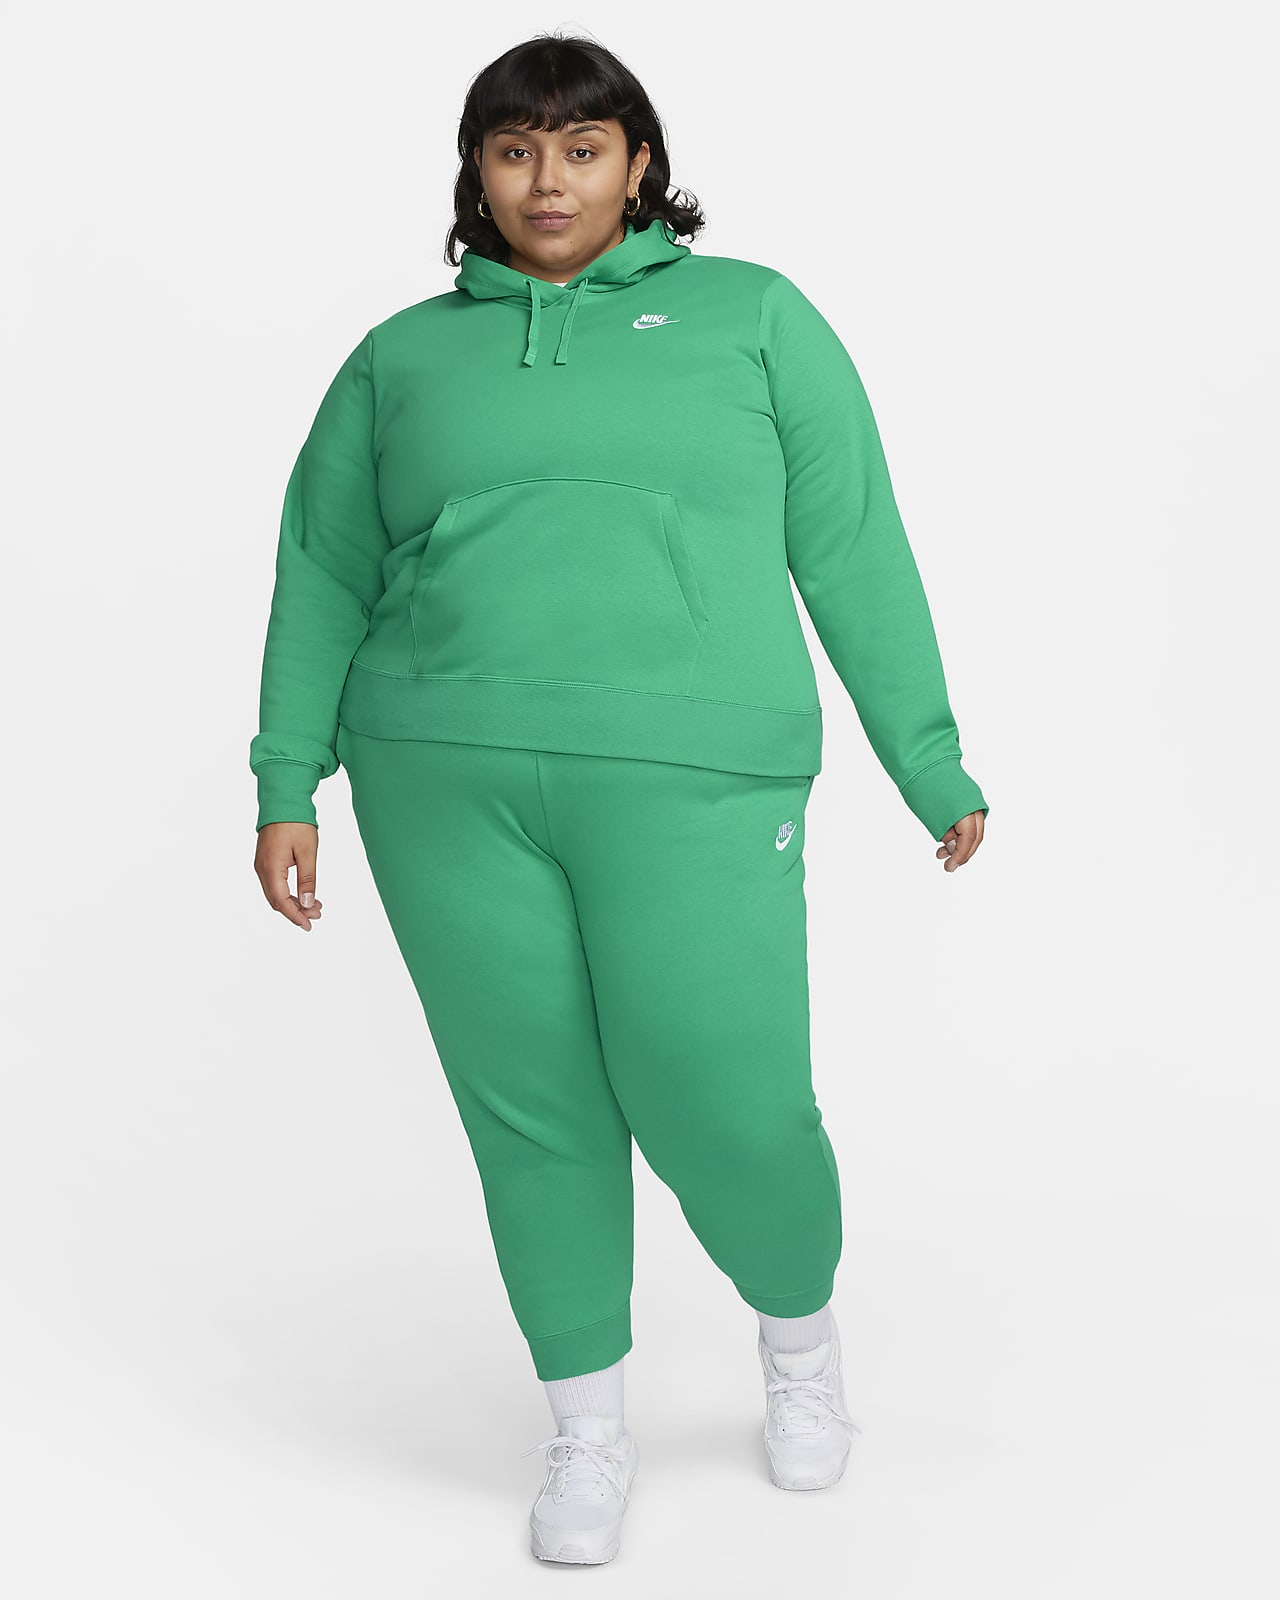 NWT Women's Nike Sportswear Nike Air Fleece Hoodie Plus Size 1X MSRP $75